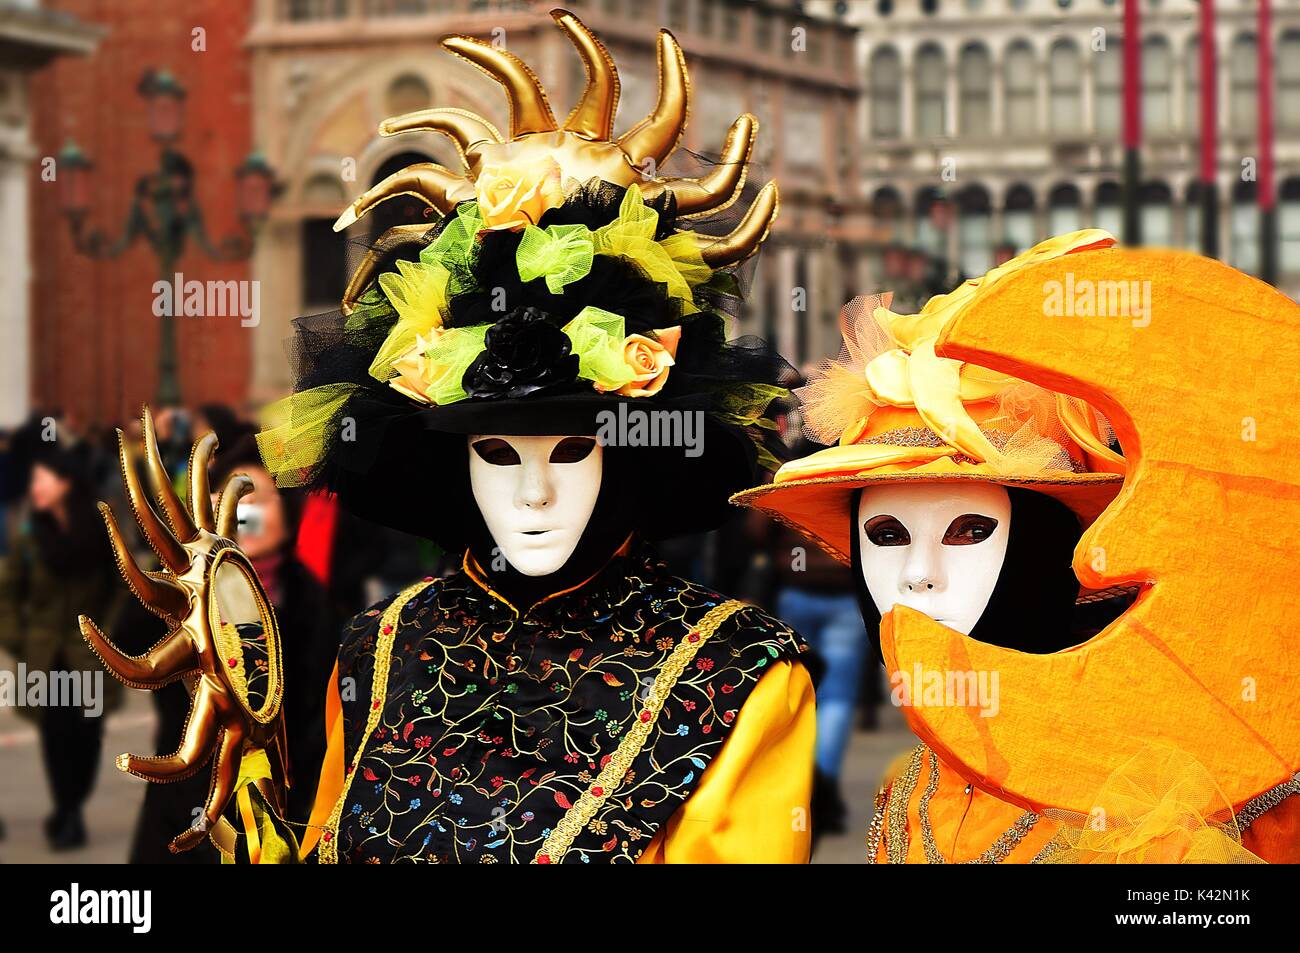 Deux personnes en costume lors d'une mascarade au Carnaval de Venise, l'un comme le soleil, l'autre comme la lune. Banque D'Images